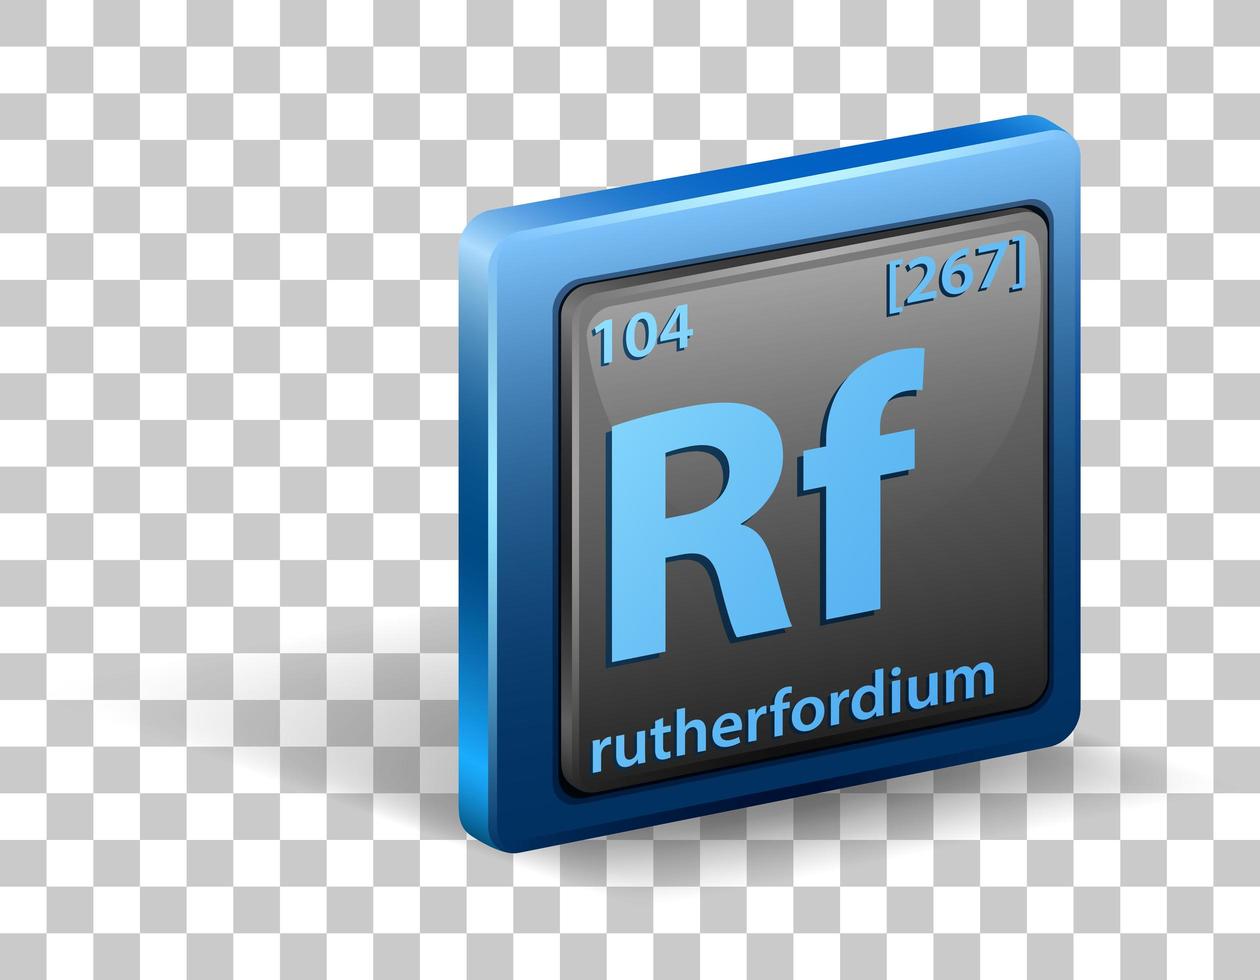 elemento químico rutherfórdio. símbolo químico com número atômico e massa atômica. vetor